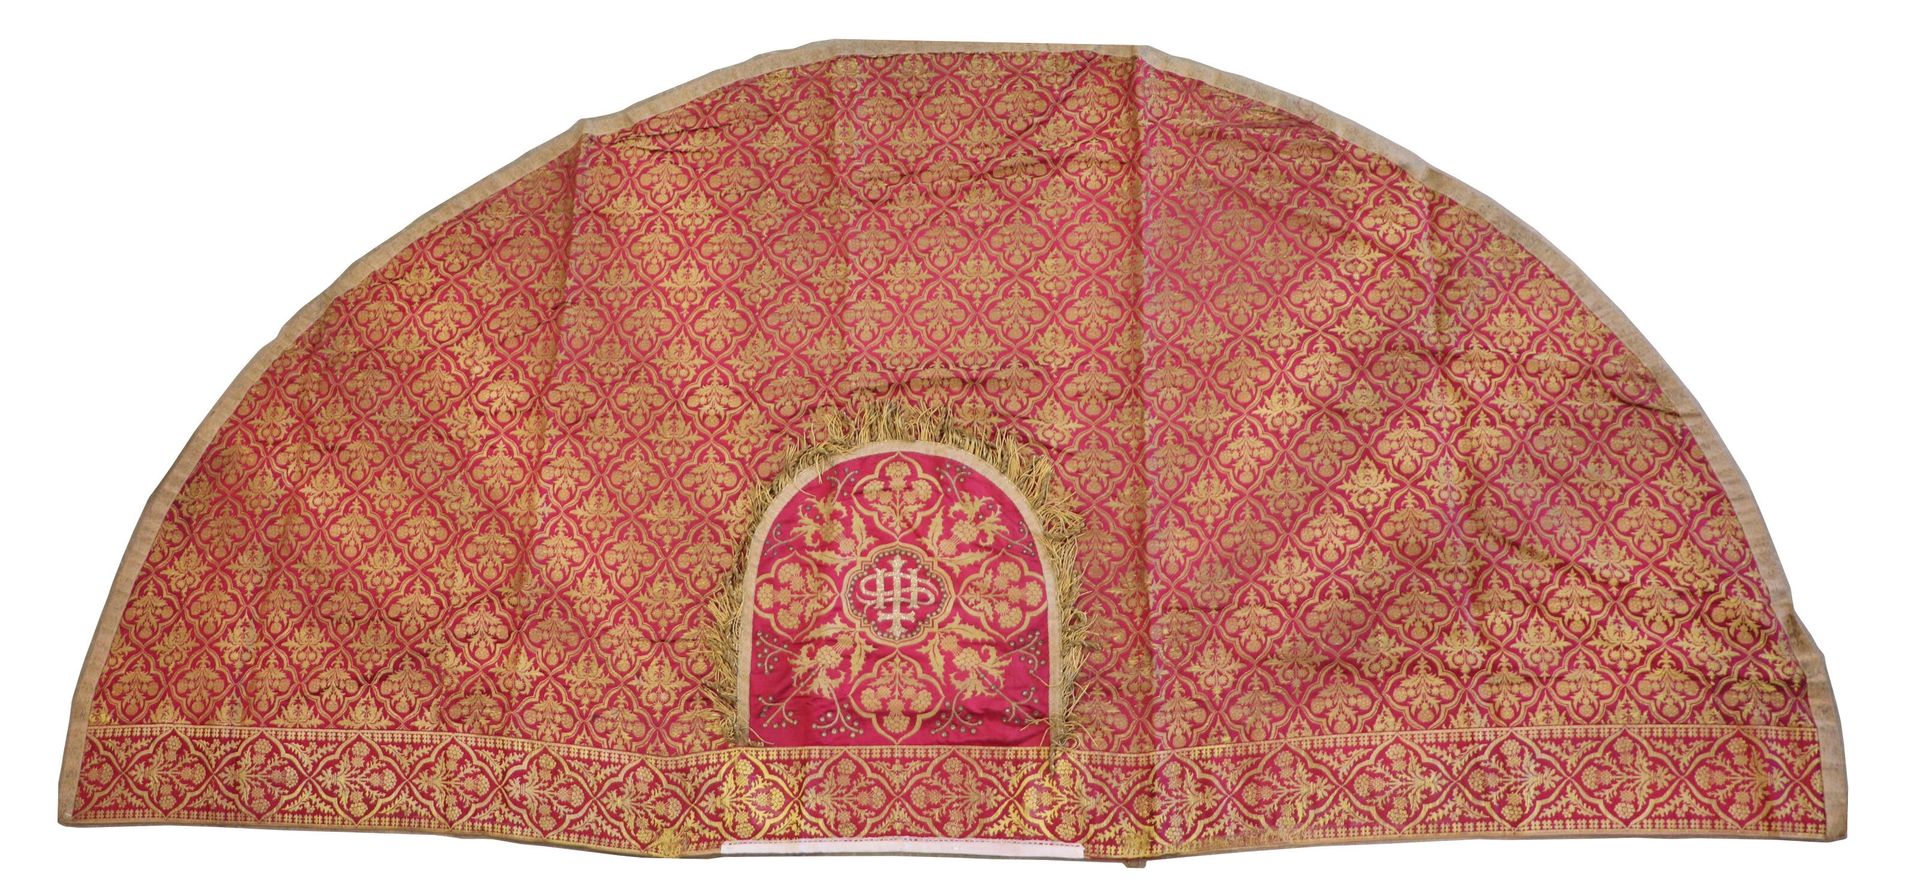 Null 红色面料的宗教斗篷，有丰富的镀金装饰，绣有分格的树叶。 
三角形部分有IHS的字样。 
19世纪。 
高146厘米，长299厘米。